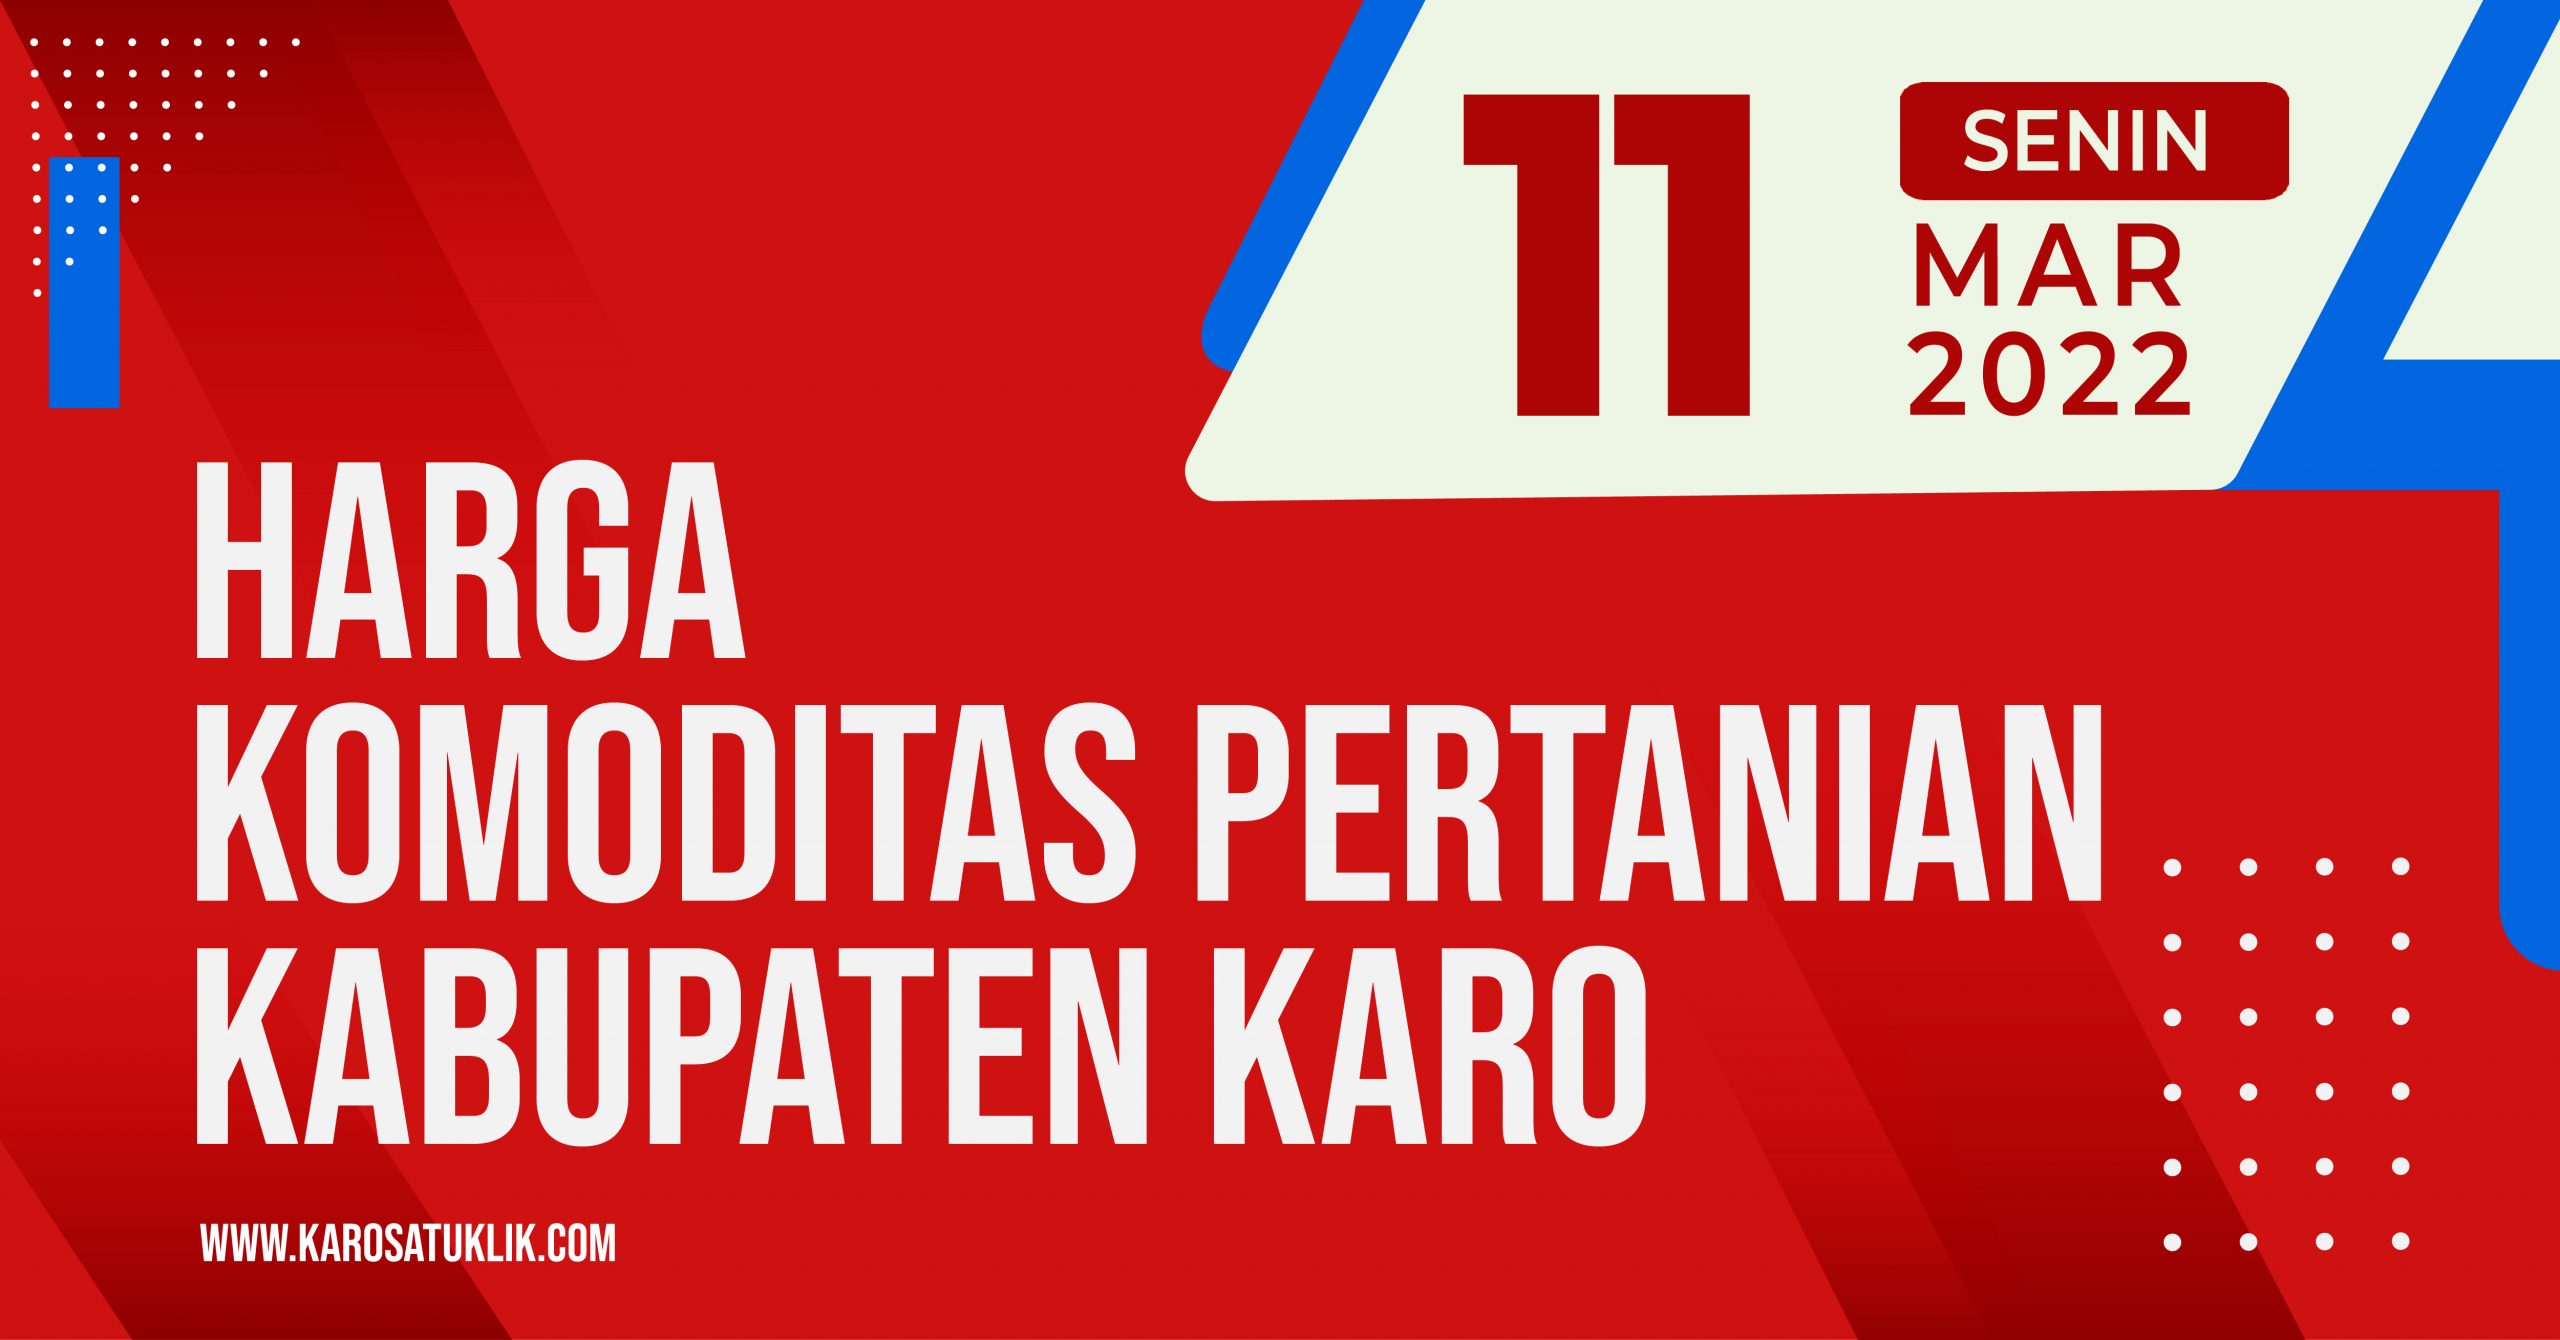 Daftar Harga Komoditas Pertanian Kabupaten Karo, Senin 11 April 2022